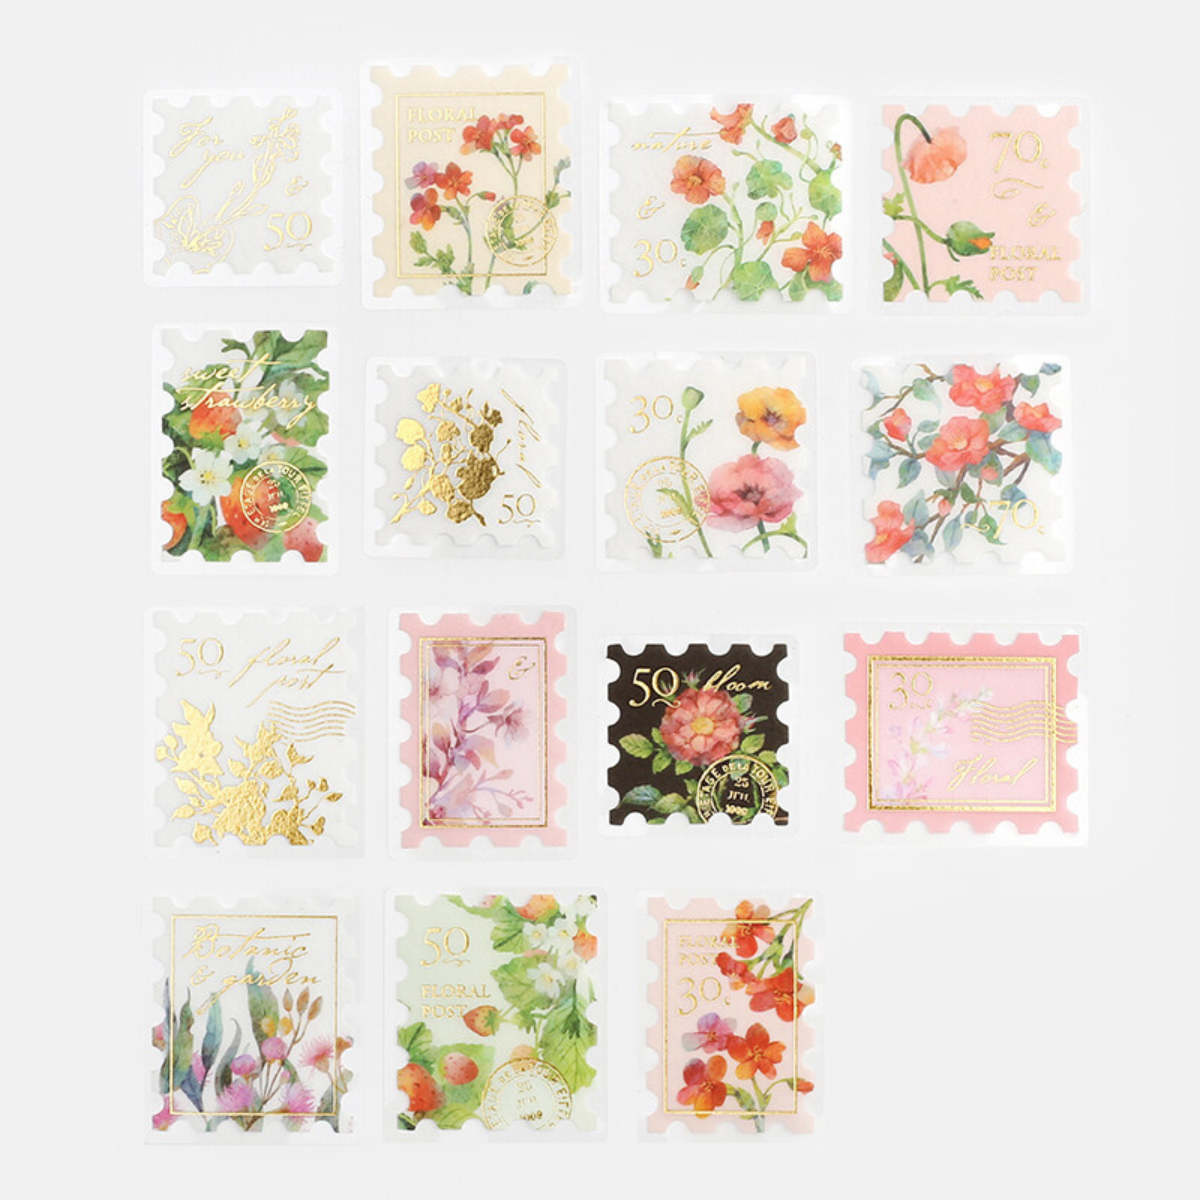 Pochette de 45 stickers en forme de timbre poste avec des fleurs.